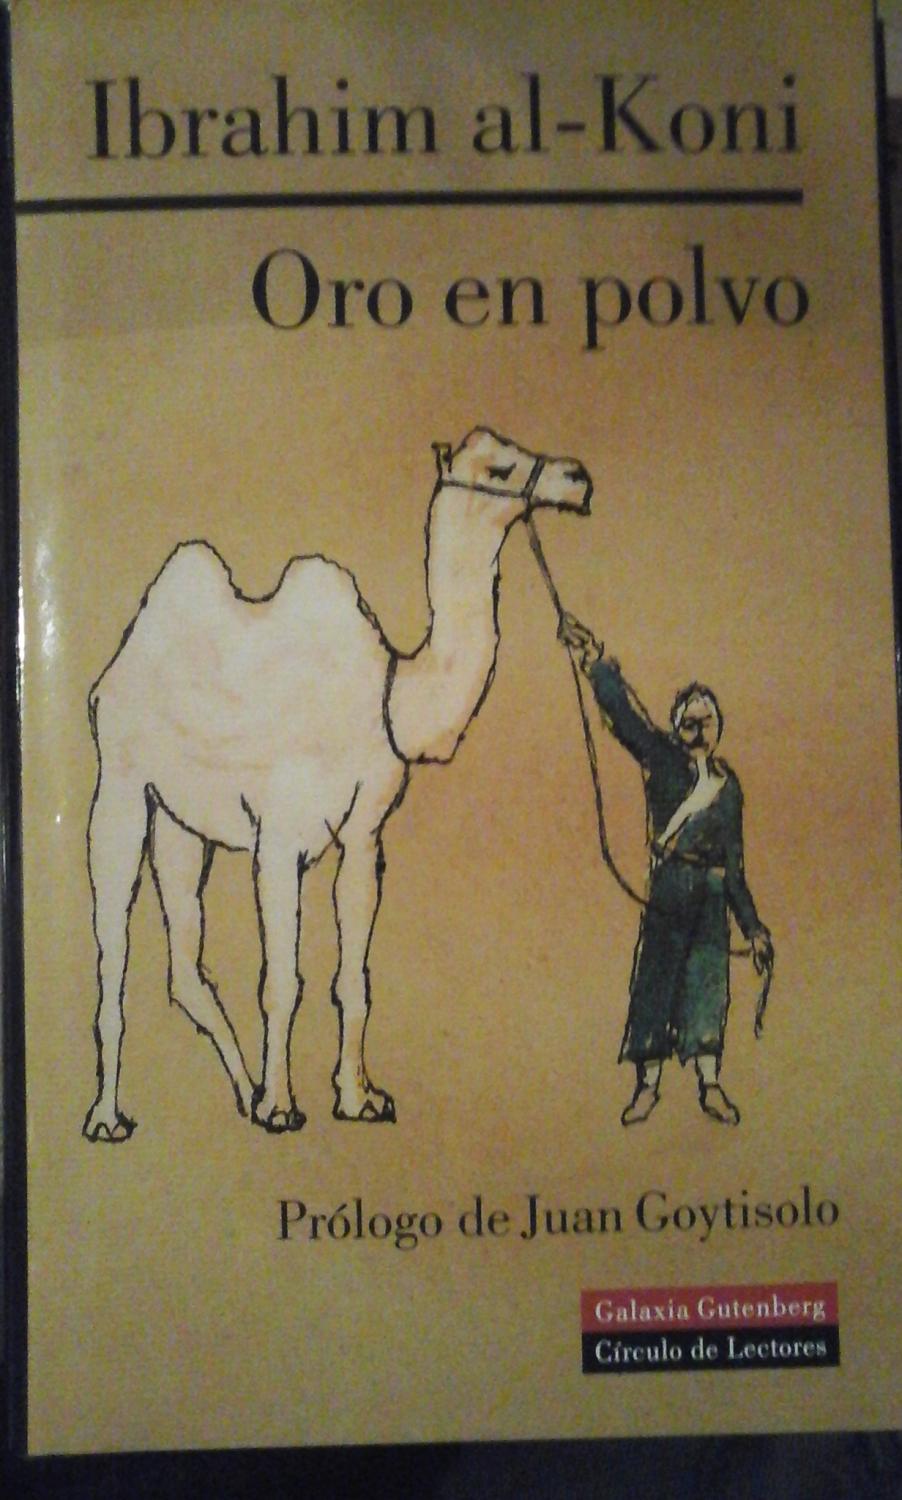 Ibrahim Al-Koni: ORO EN POLVO (Barcelona, 1999) - Ibrahim Al-Koni (nacido en 1948) crecio en una tribu tuareg del desierto libio.Estudió literatura en Moscú. Reside en Suiza. Su obra es extensa y es reconocido como uno de los grandes escritores vivos